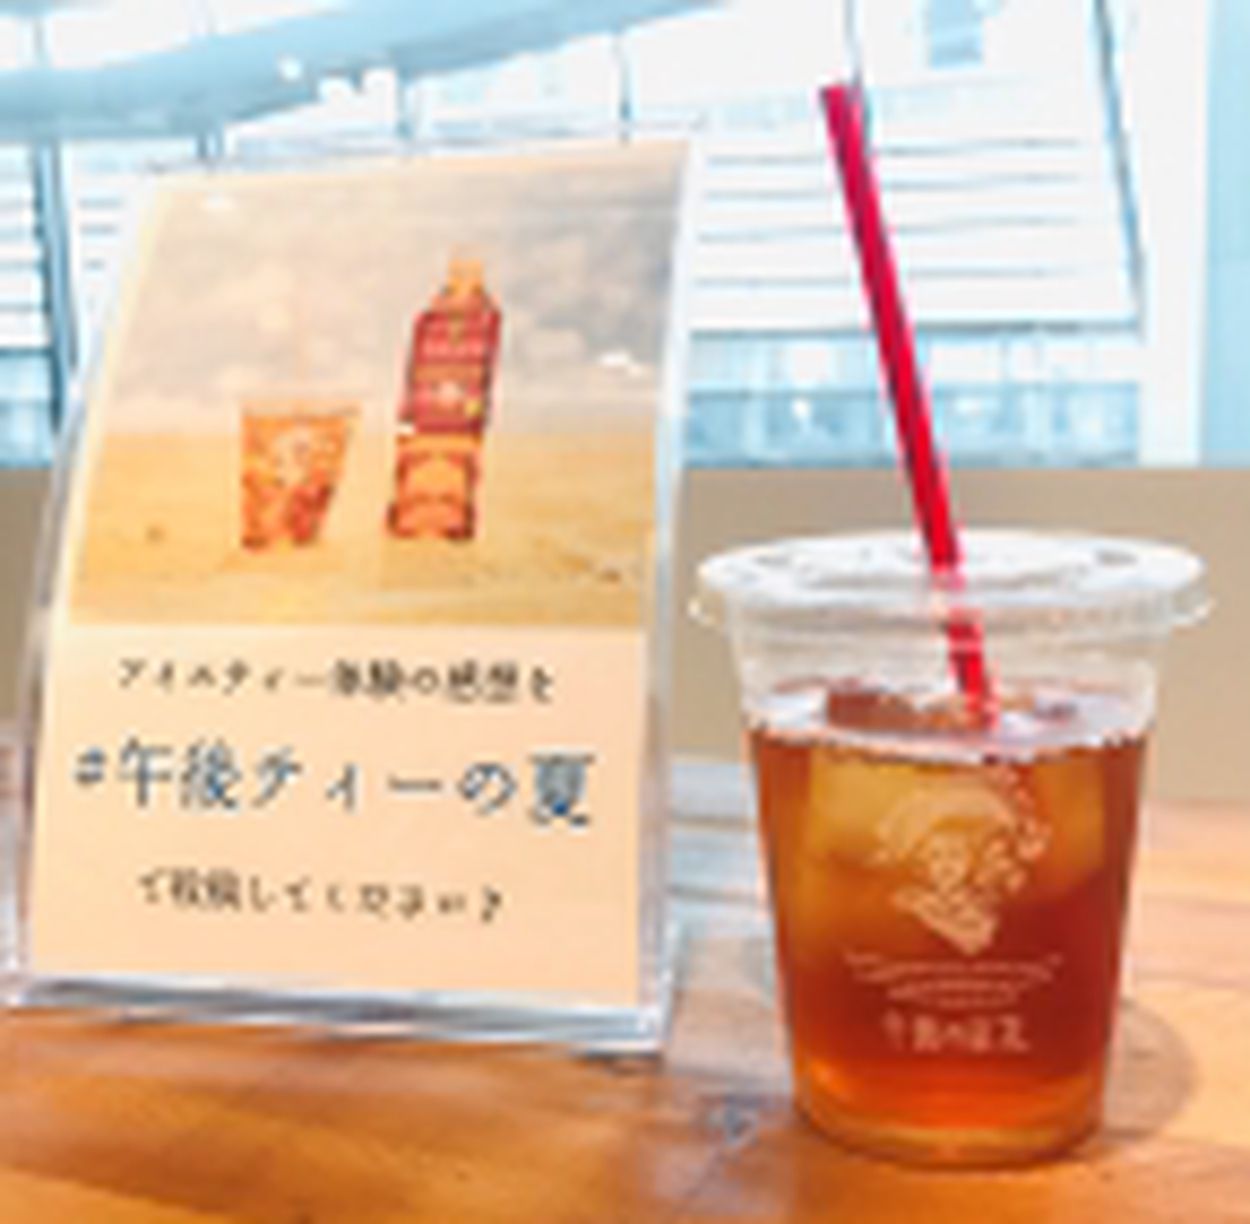 午後の紅茶」アイスティー体験イベントを渋谷で実施、目黒蓮さんの大型